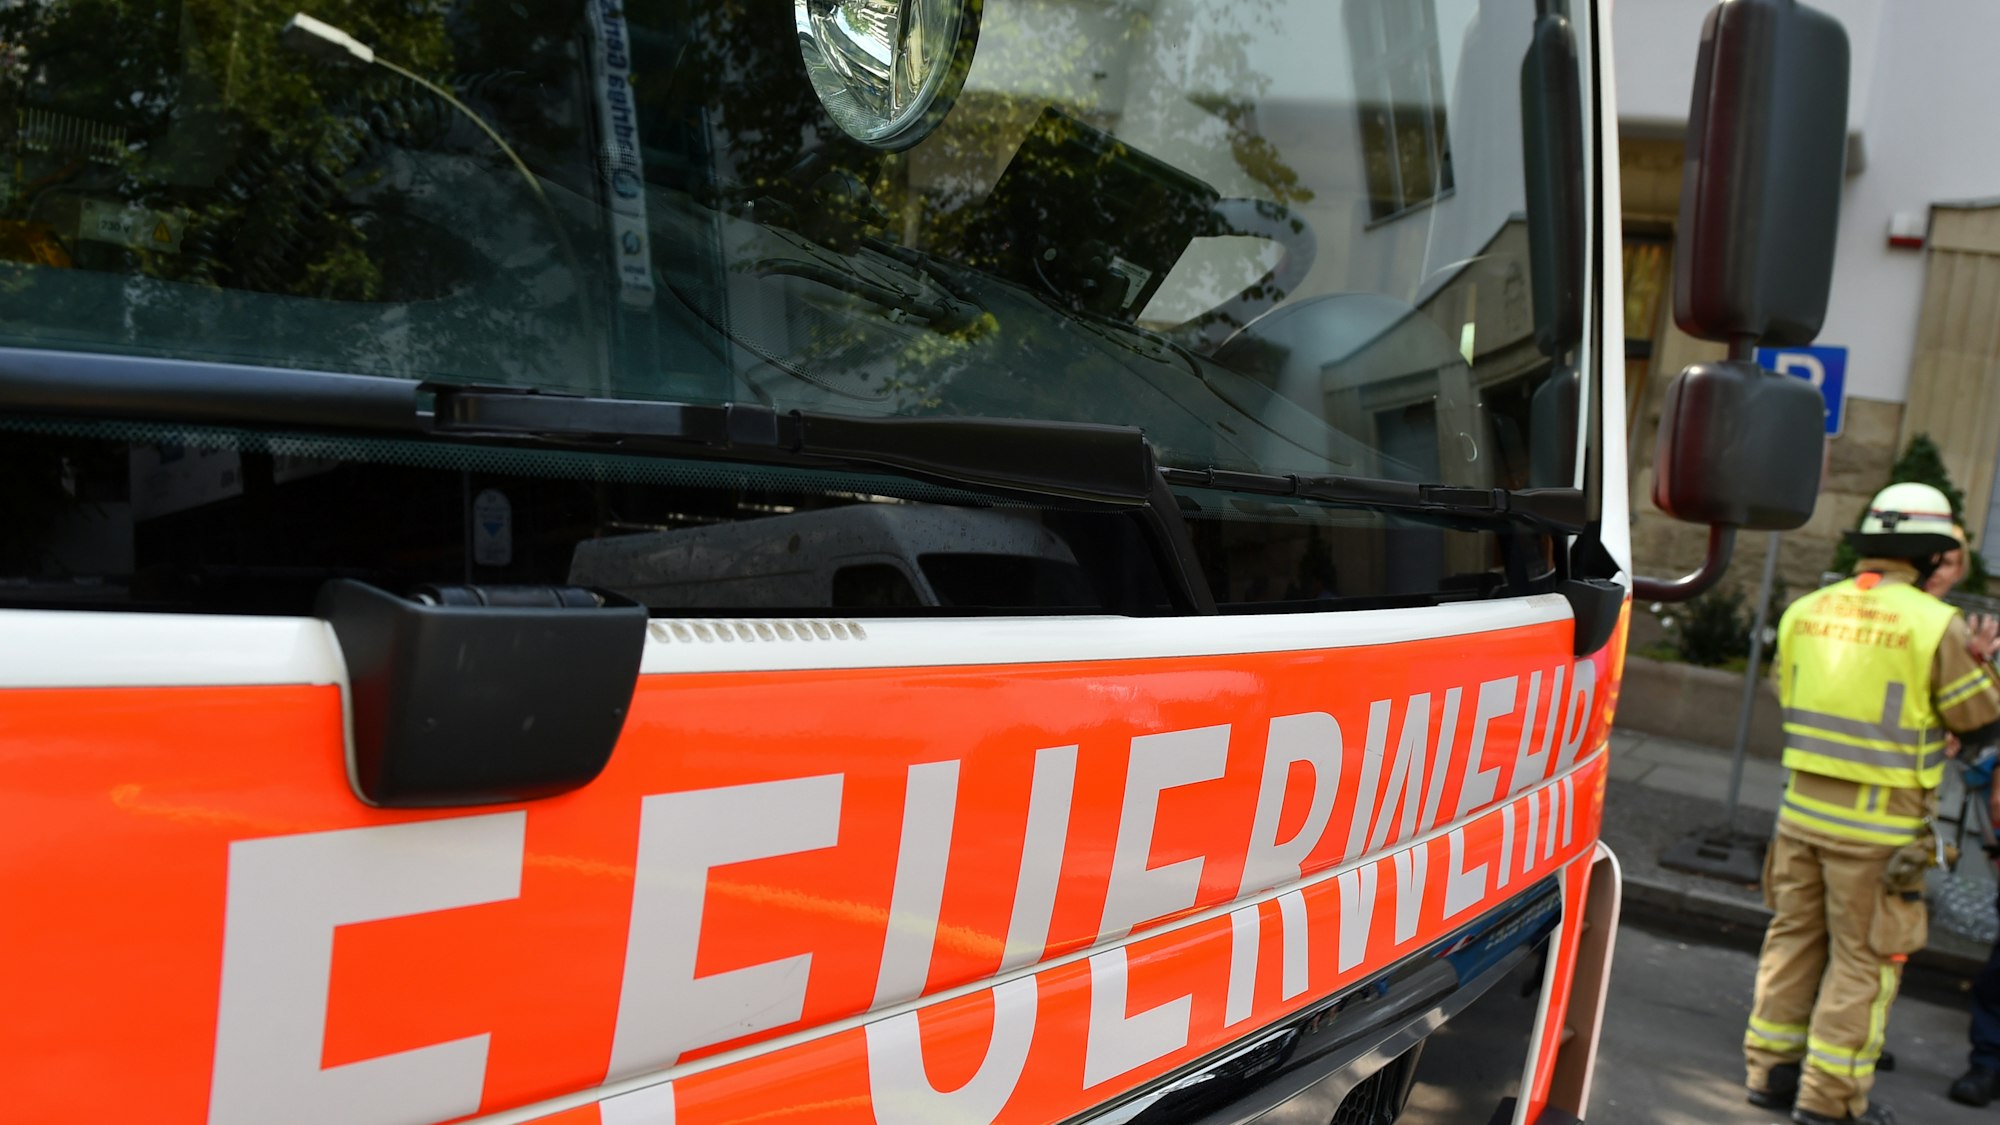 In Saarlouis wurden mehrere Mitarbeiter der Freiwilligen Feuerwehr beurlaubt, da sie den Hitlergruß gezeigt haben. Das Symbolfoto eines Feuerwehautos wurde am 21. August 2015 in Berlin aufgenommen. Neben dem Feuerwehrauto steht ein Feuerwehrmann bei einem Einsatz.